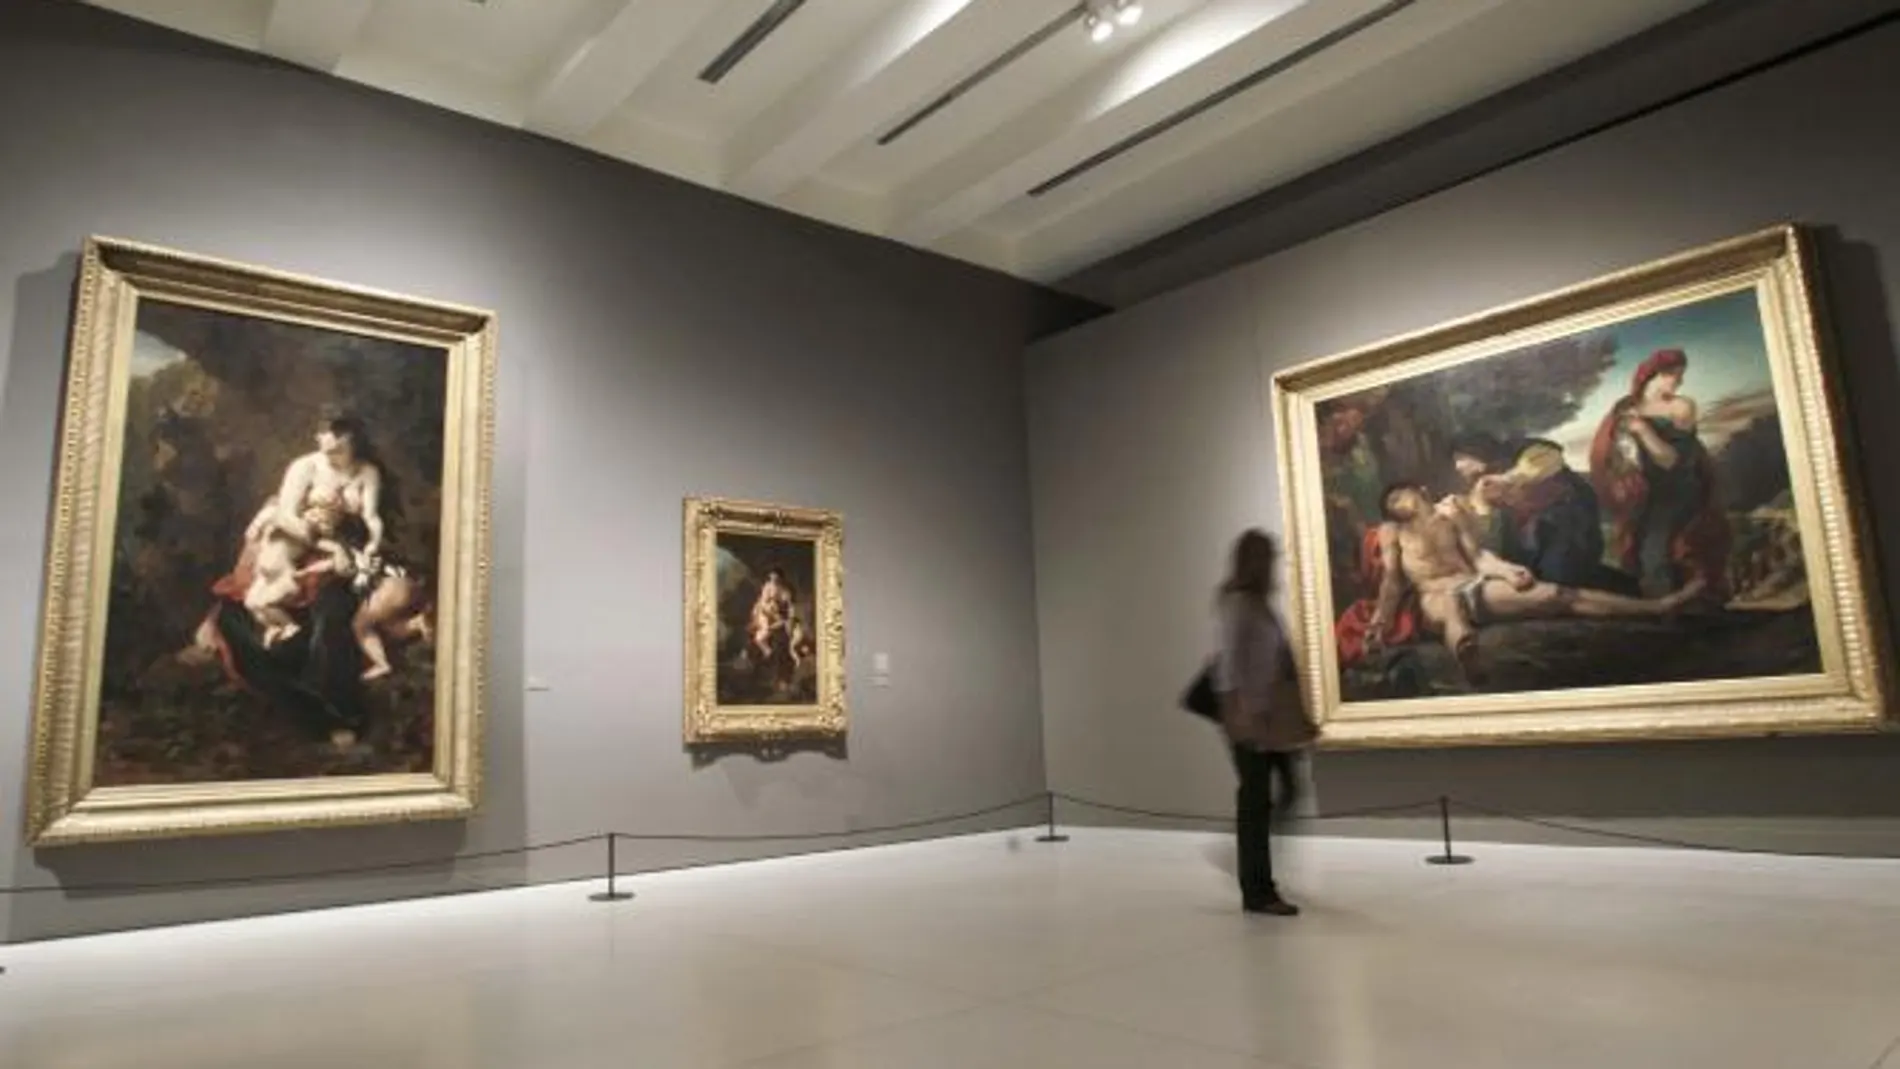 Una visitante observa la obra "Medea y San Sebastian"en la exposición "Eugène Delacroix (1798-1863)"